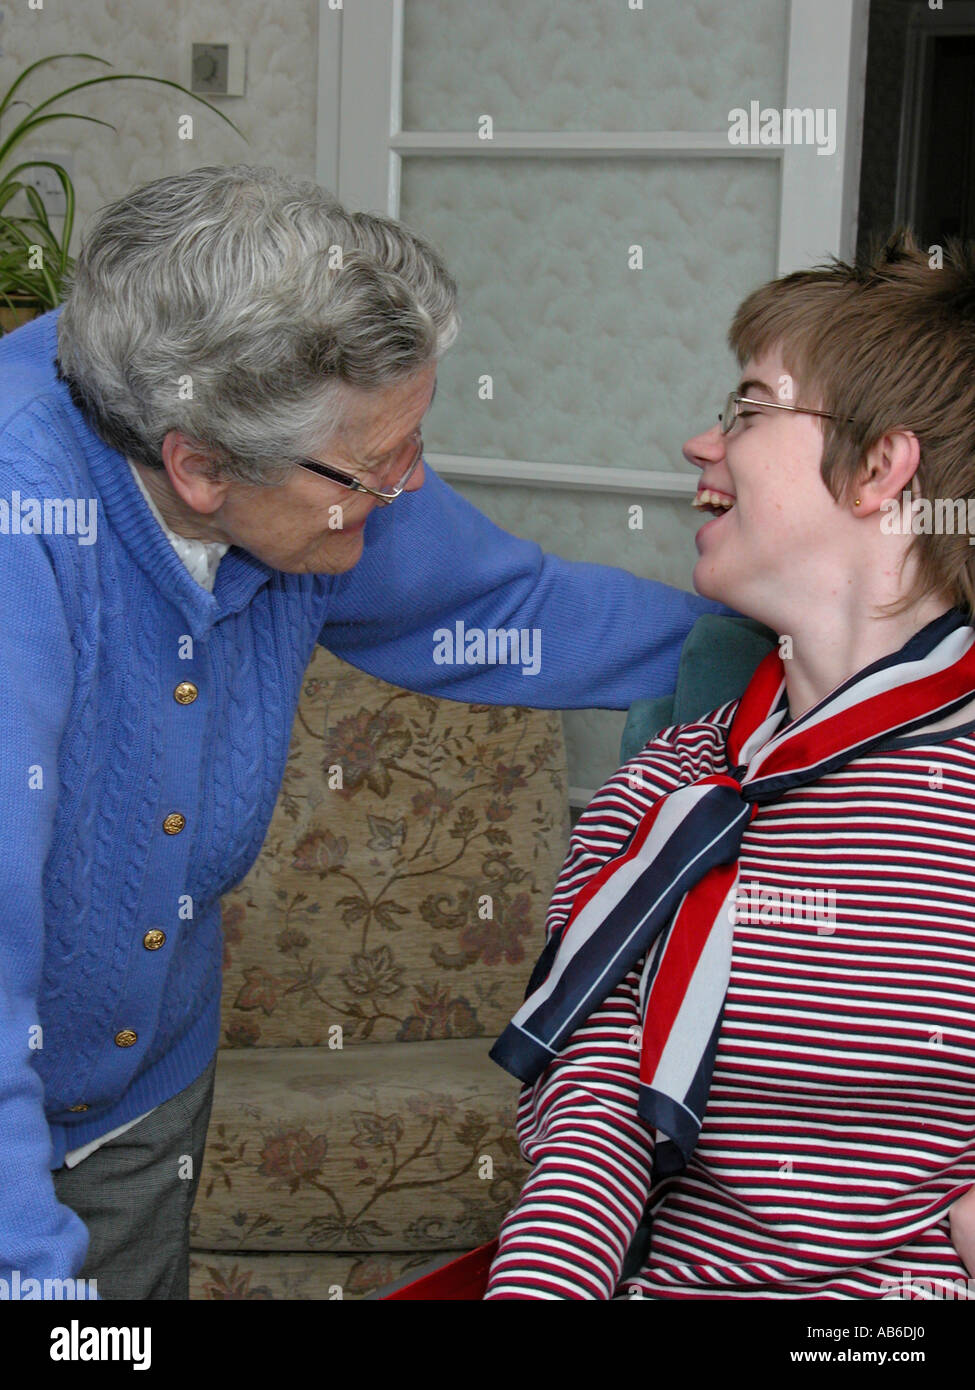 18 Jahre alte Teenager-Mädchen mit zerebraler Lähmung einen lachen mit einer älteren Frau zu teilen könnten relative Pflegeperson Freund Nachbar sein. Stockfoto